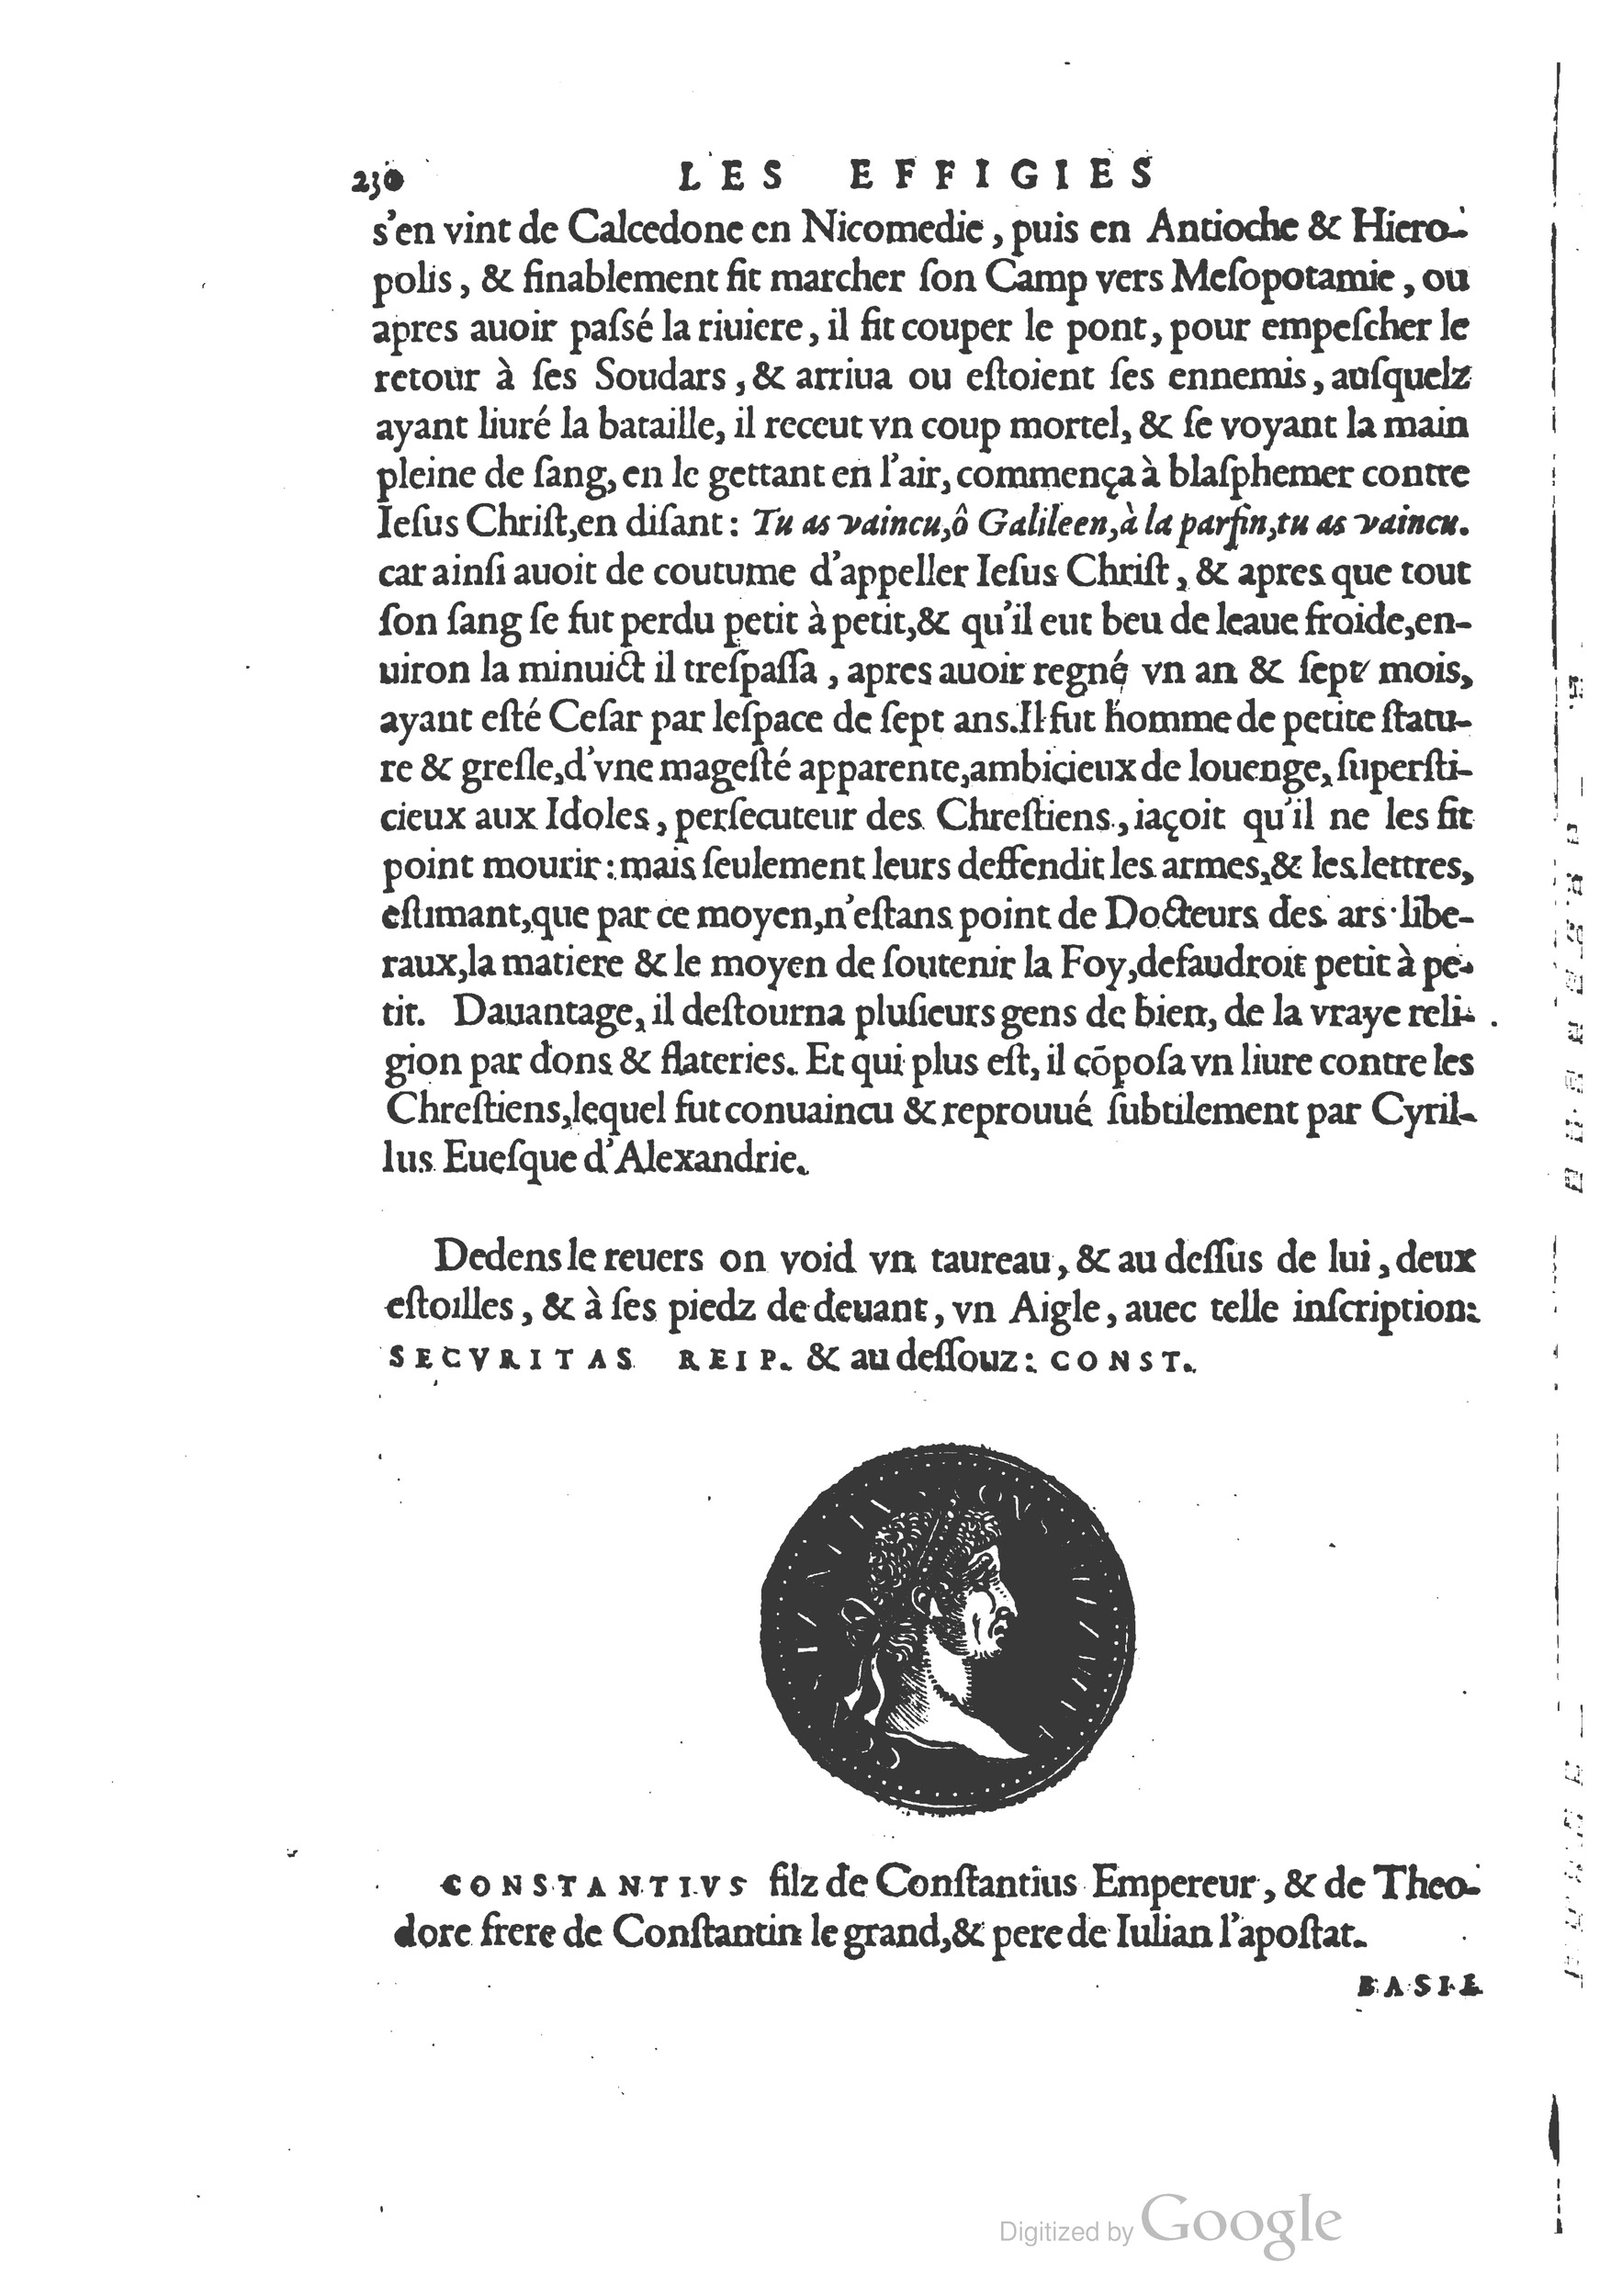 1553 Epitome du trésor des antiquités Strada Guérin_BM Lyon_Page_263.jpg